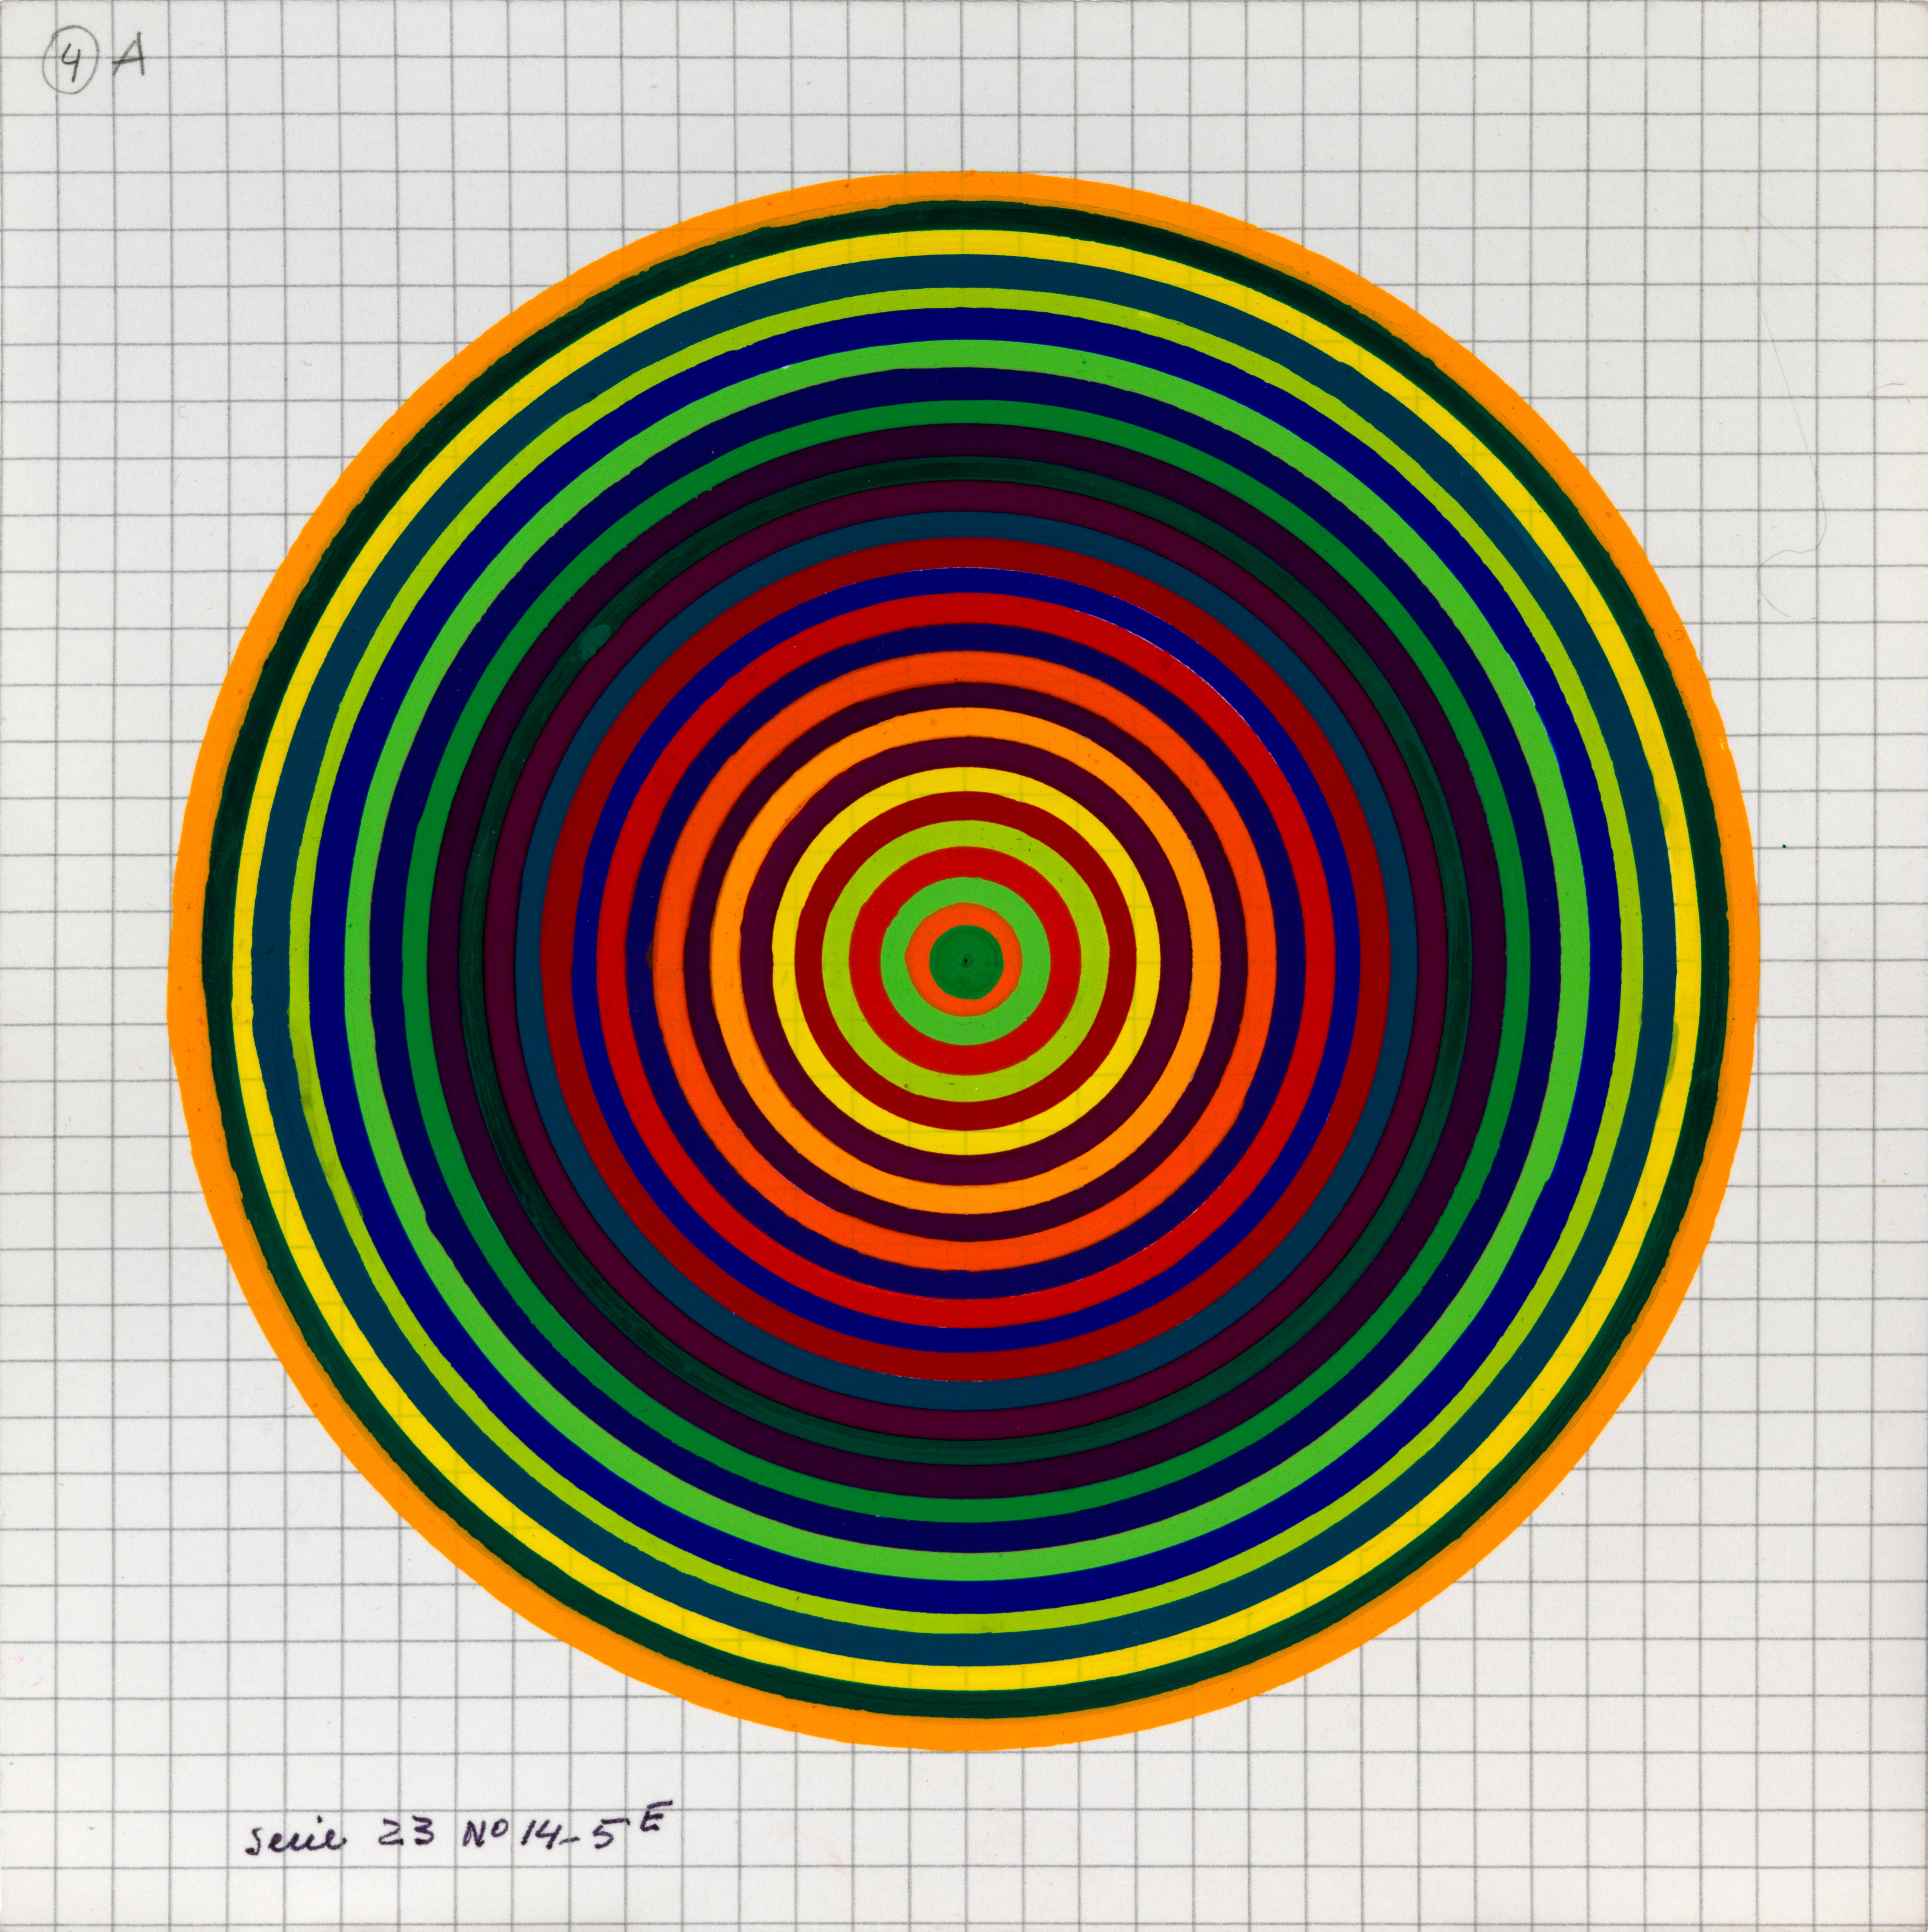 Julio Le Parc, Surface couleur, Cercles, série 23 n°14-5 E